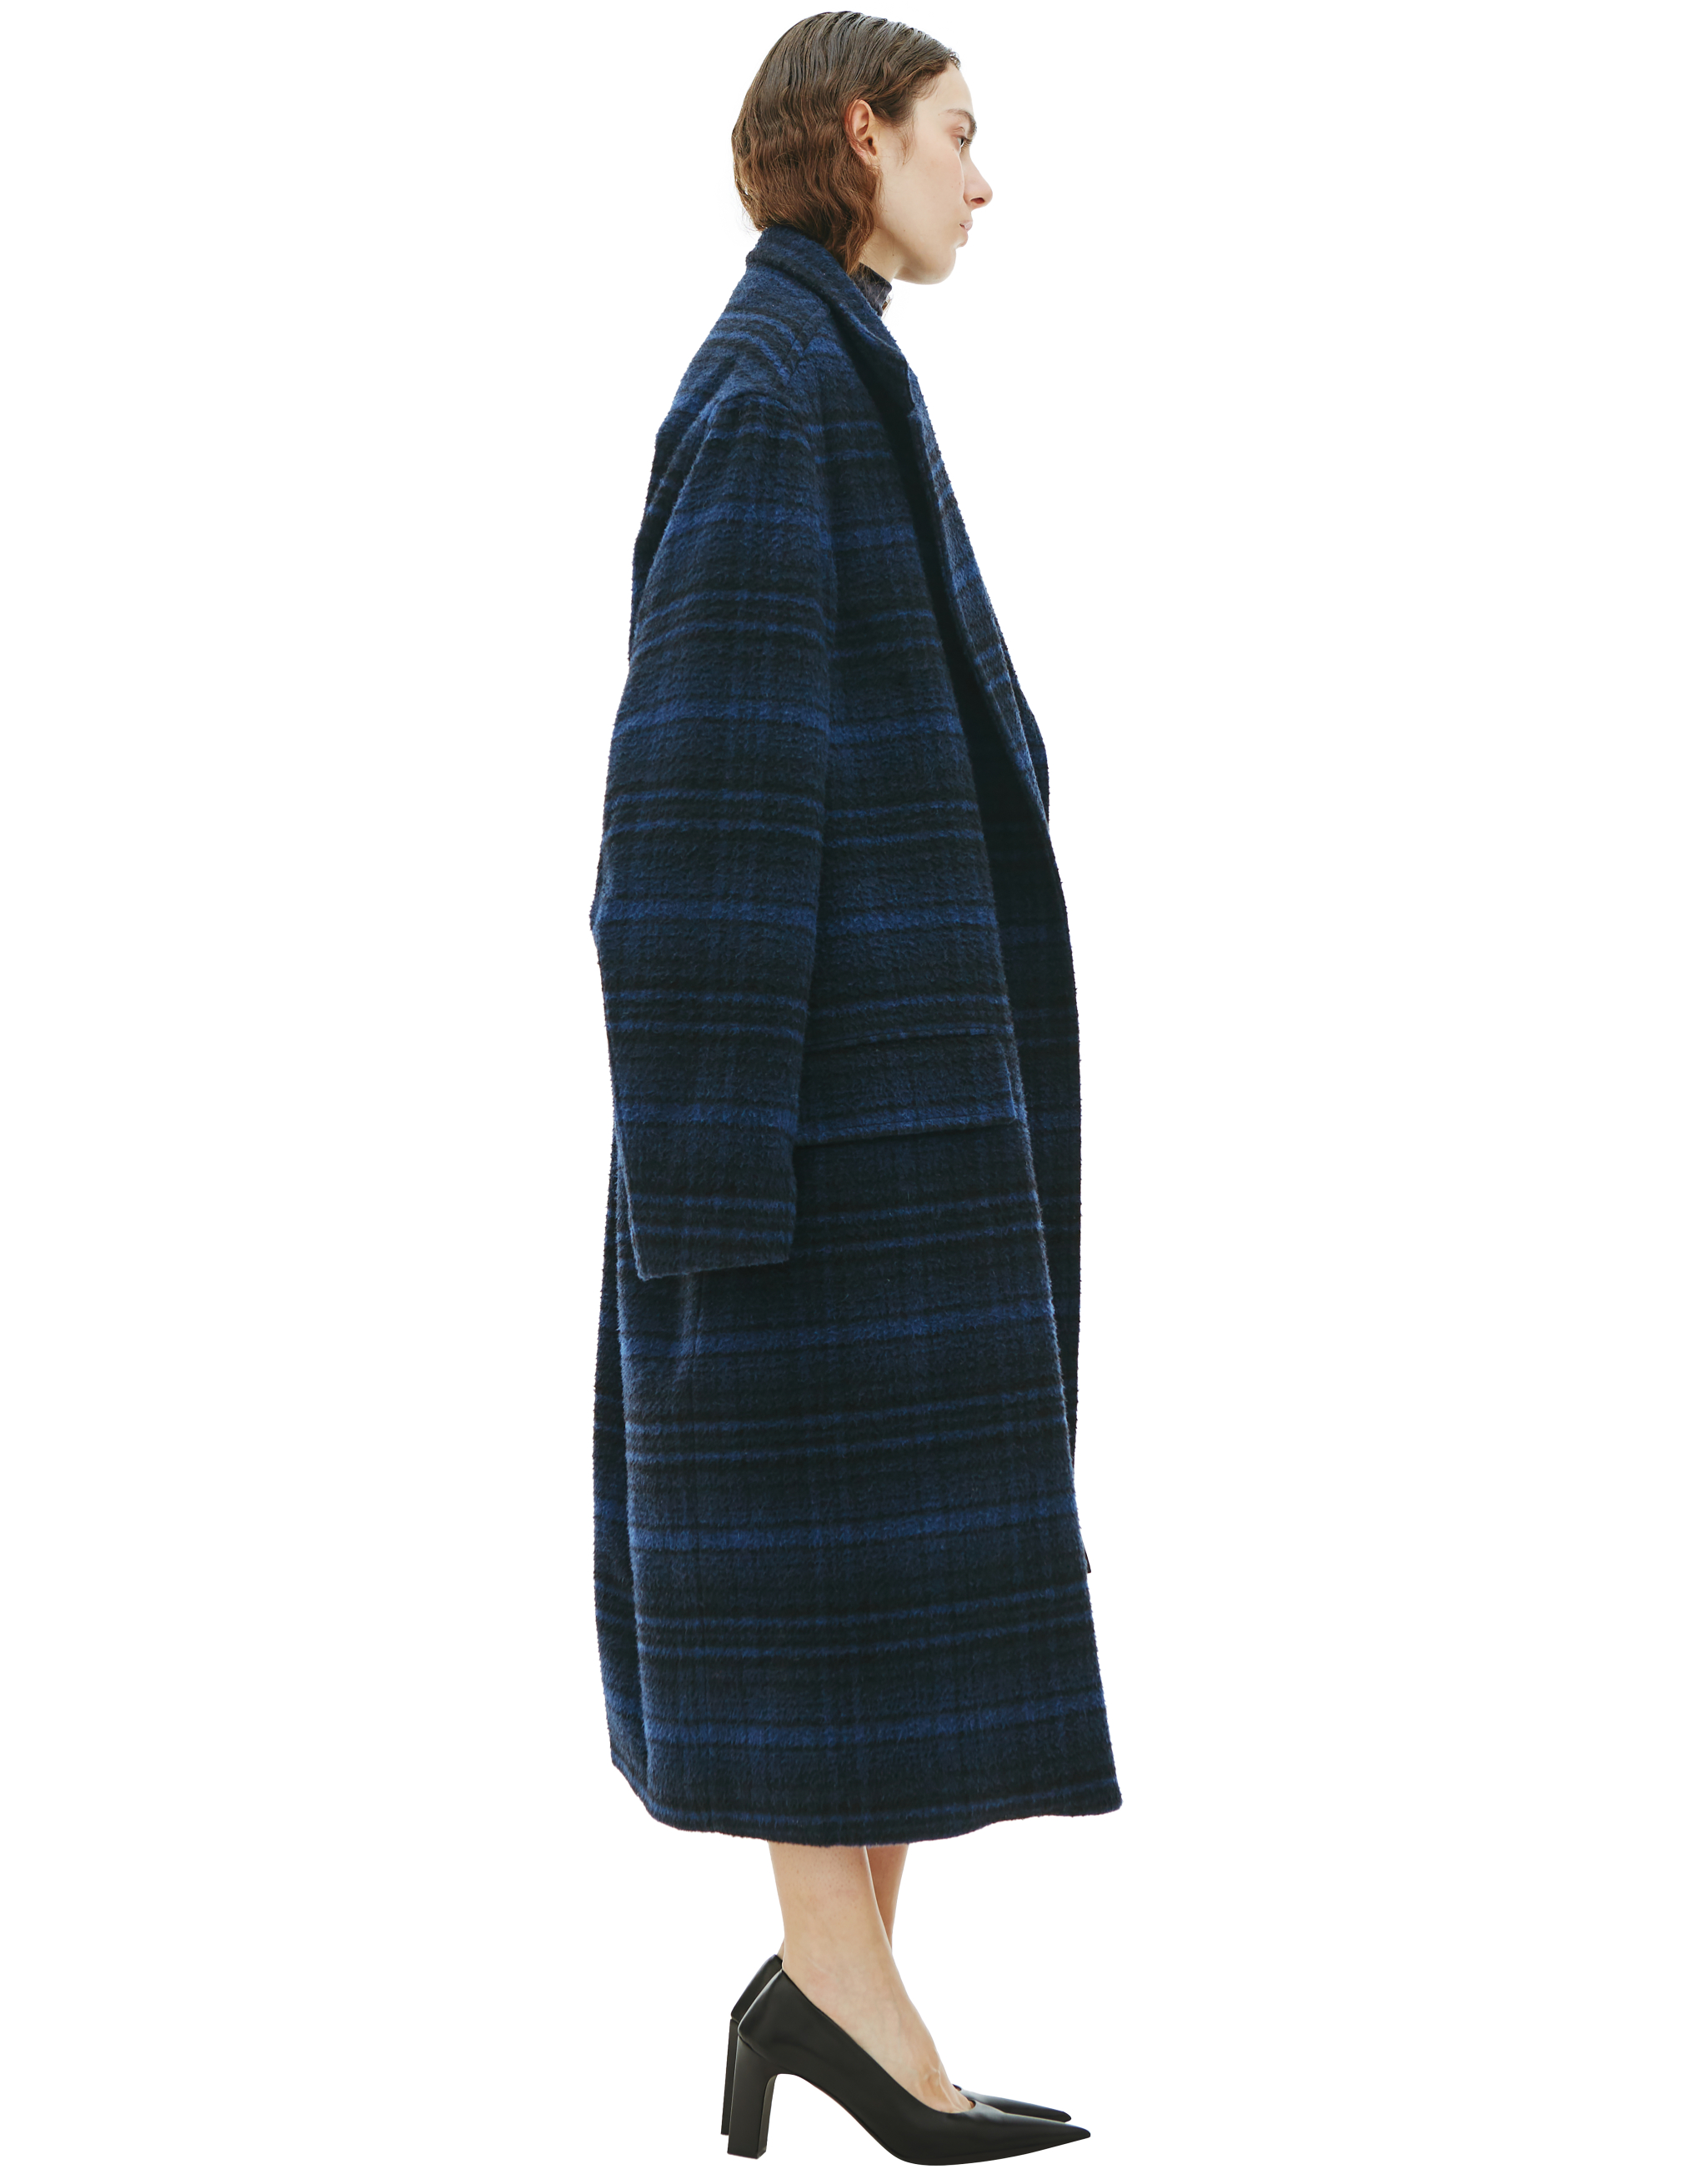 Шерстяное пальто в винтажную клетку Balenciaga 681163/TLU11/8060, размер 3;2 681163/TLU11/8060 - фото 2